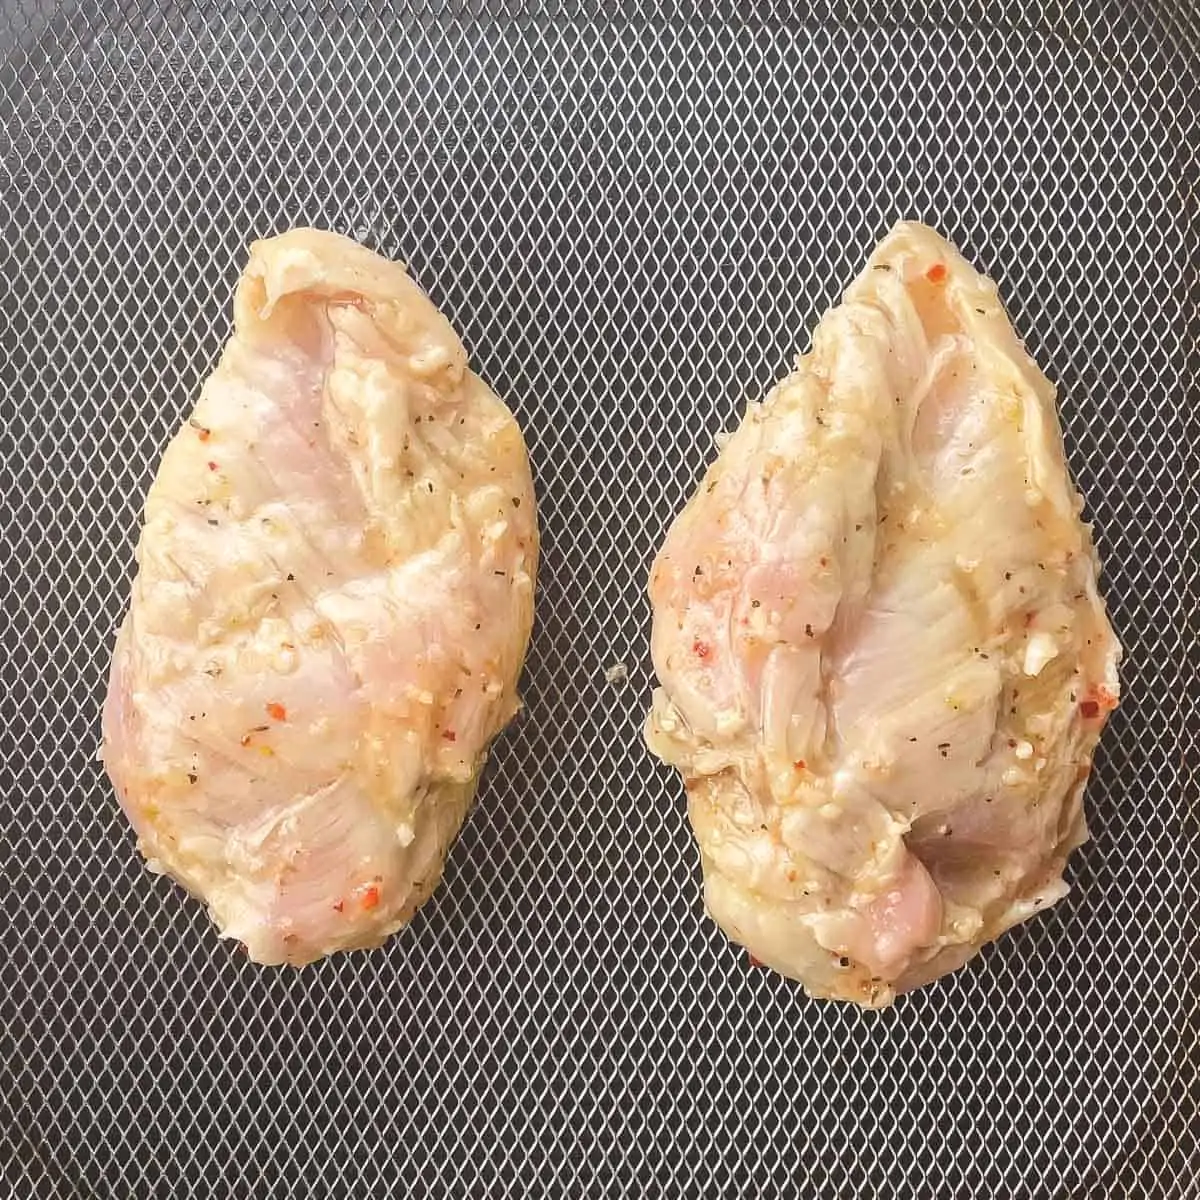 raw chicken breasts in air fryer basket